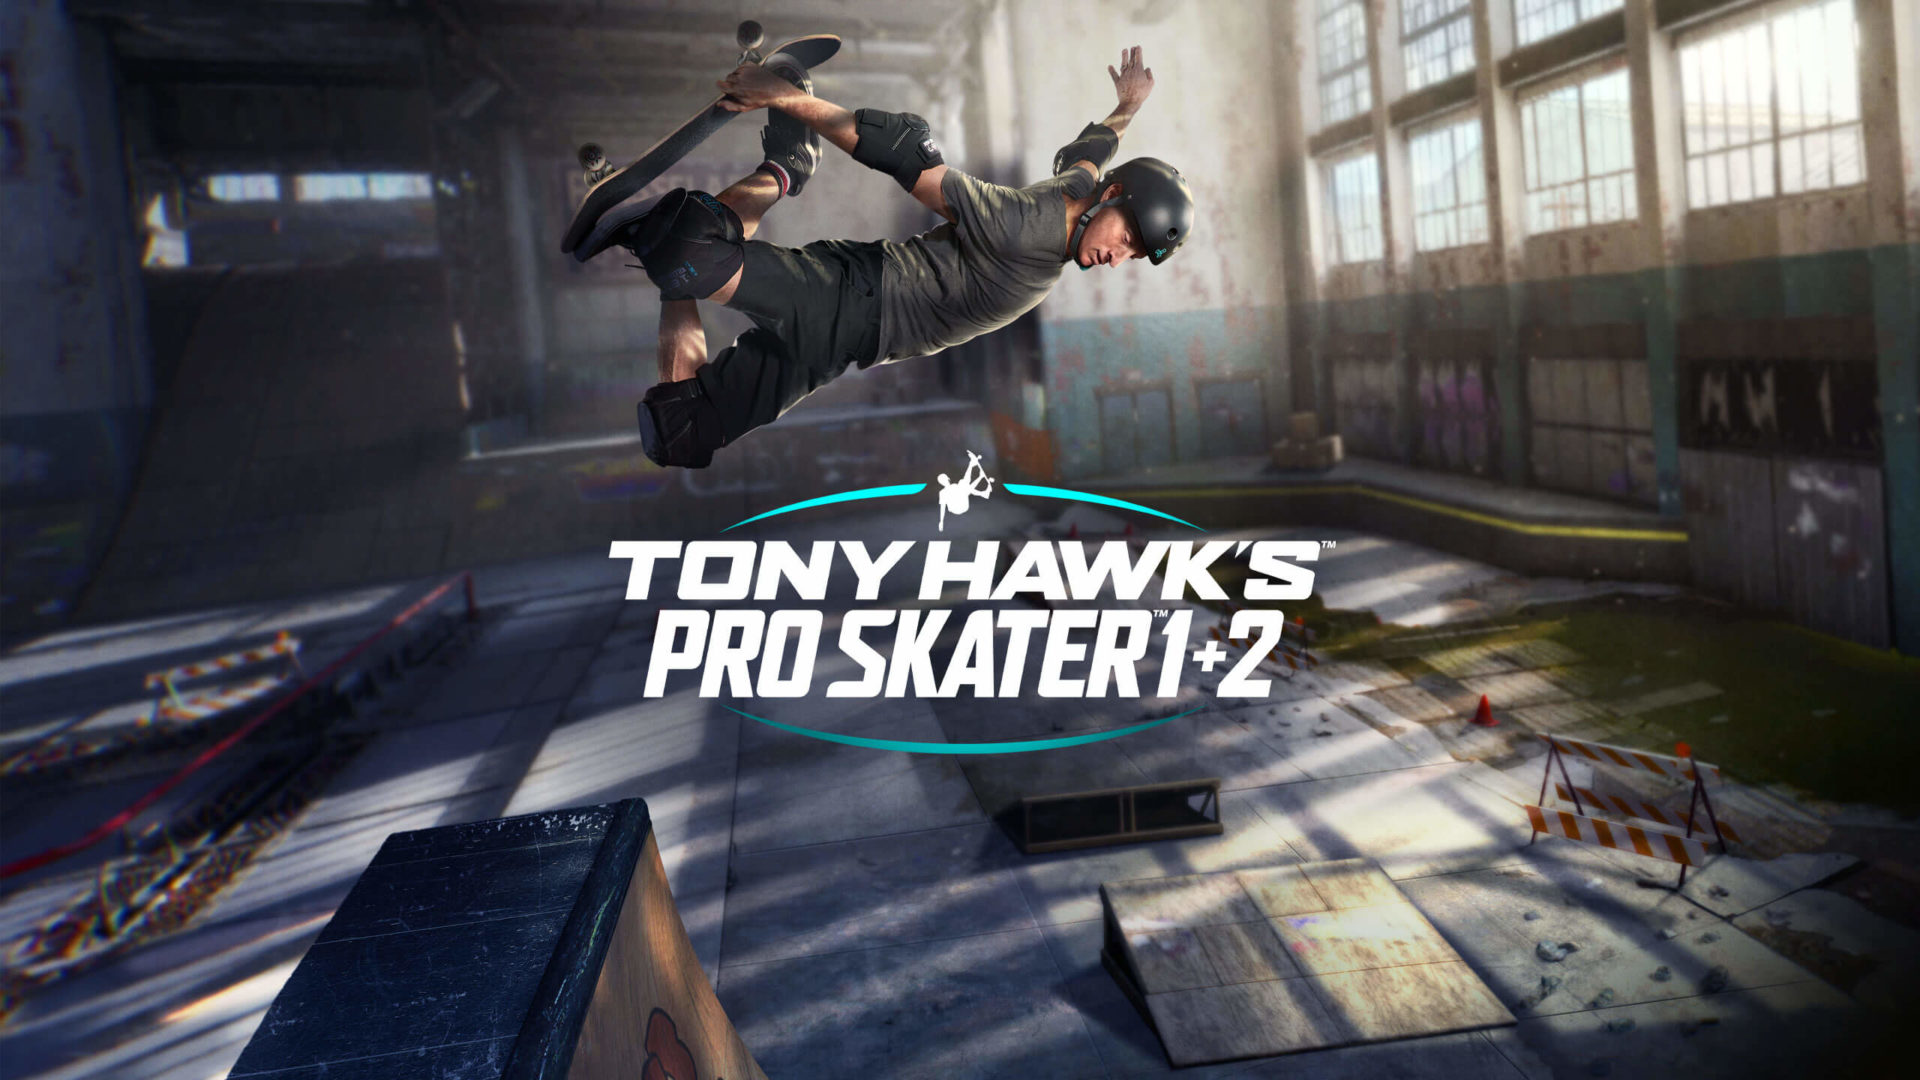 Tony Hawks Pro Skater 1&2 Key kaufen im Preis-Vergleich